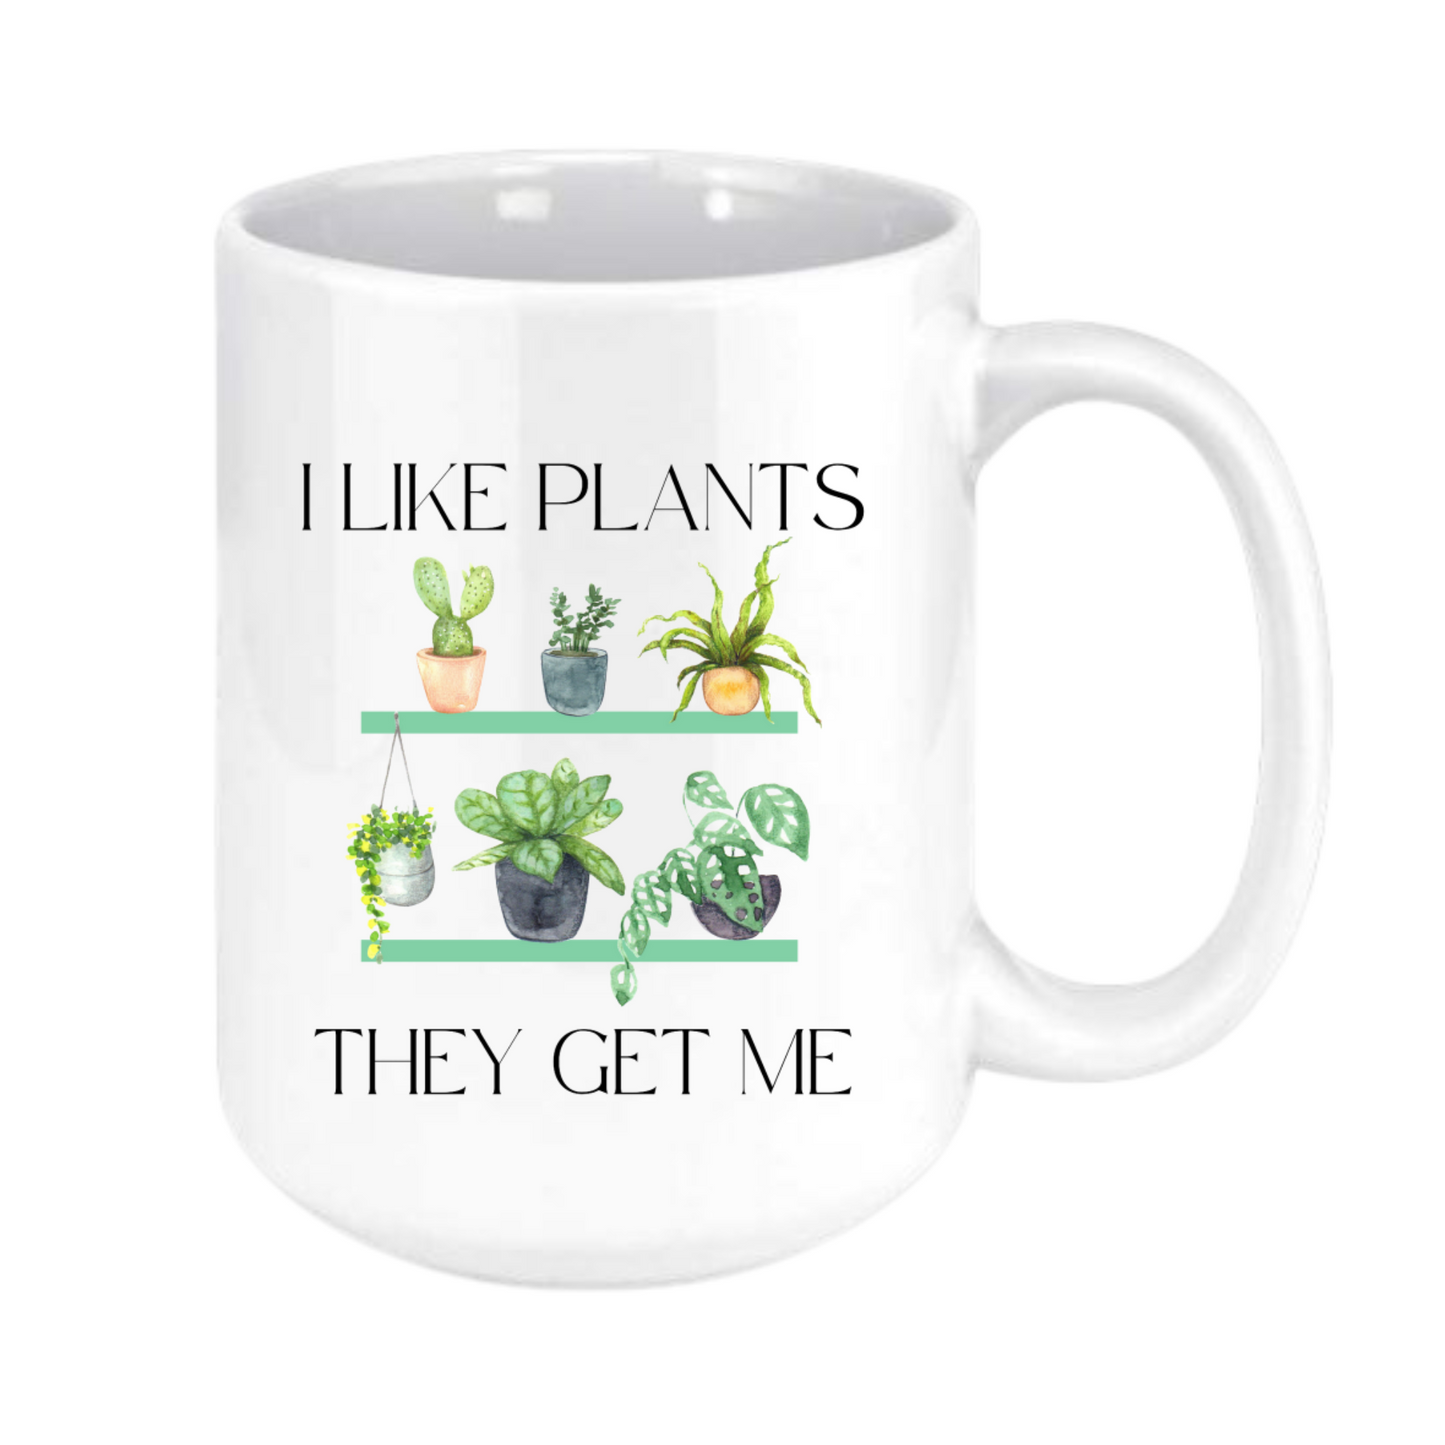 i like plants, they get me mug